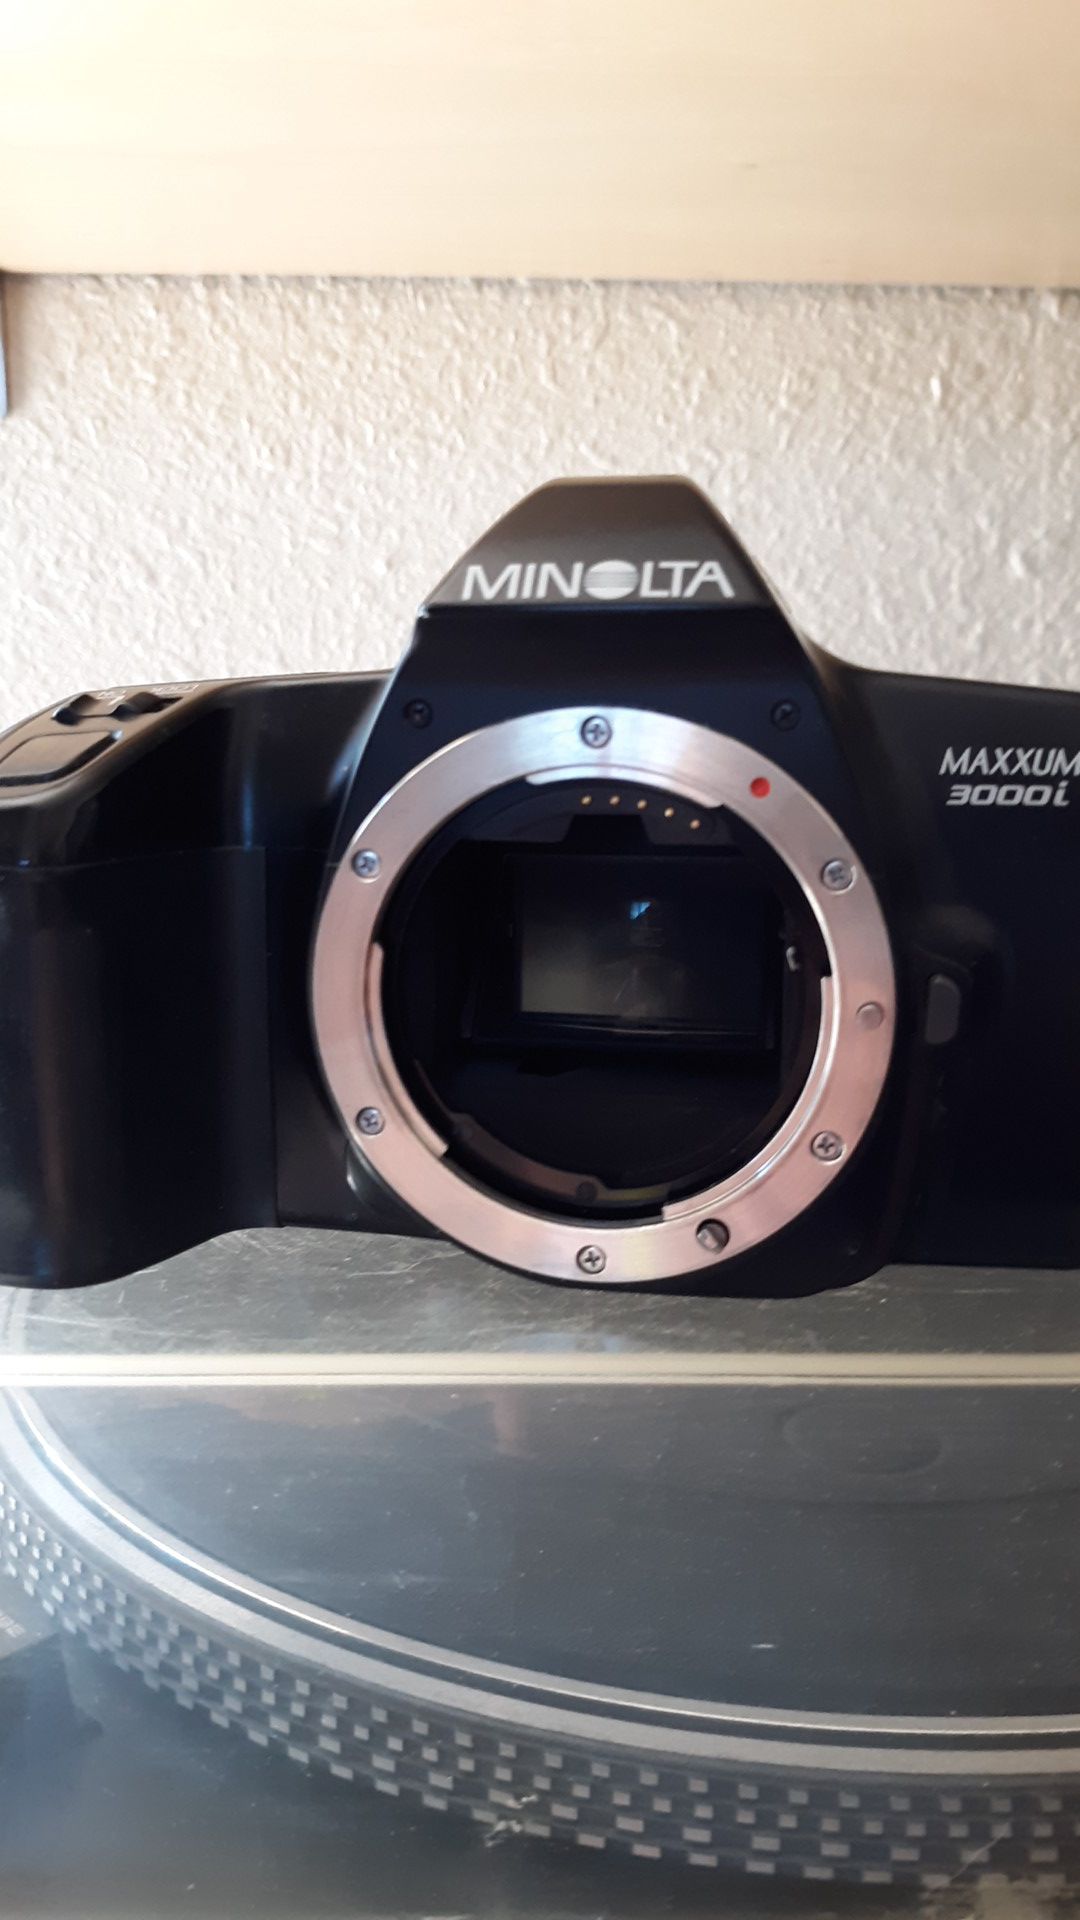 Minolta Maxxum 3000i 35mm film camera body